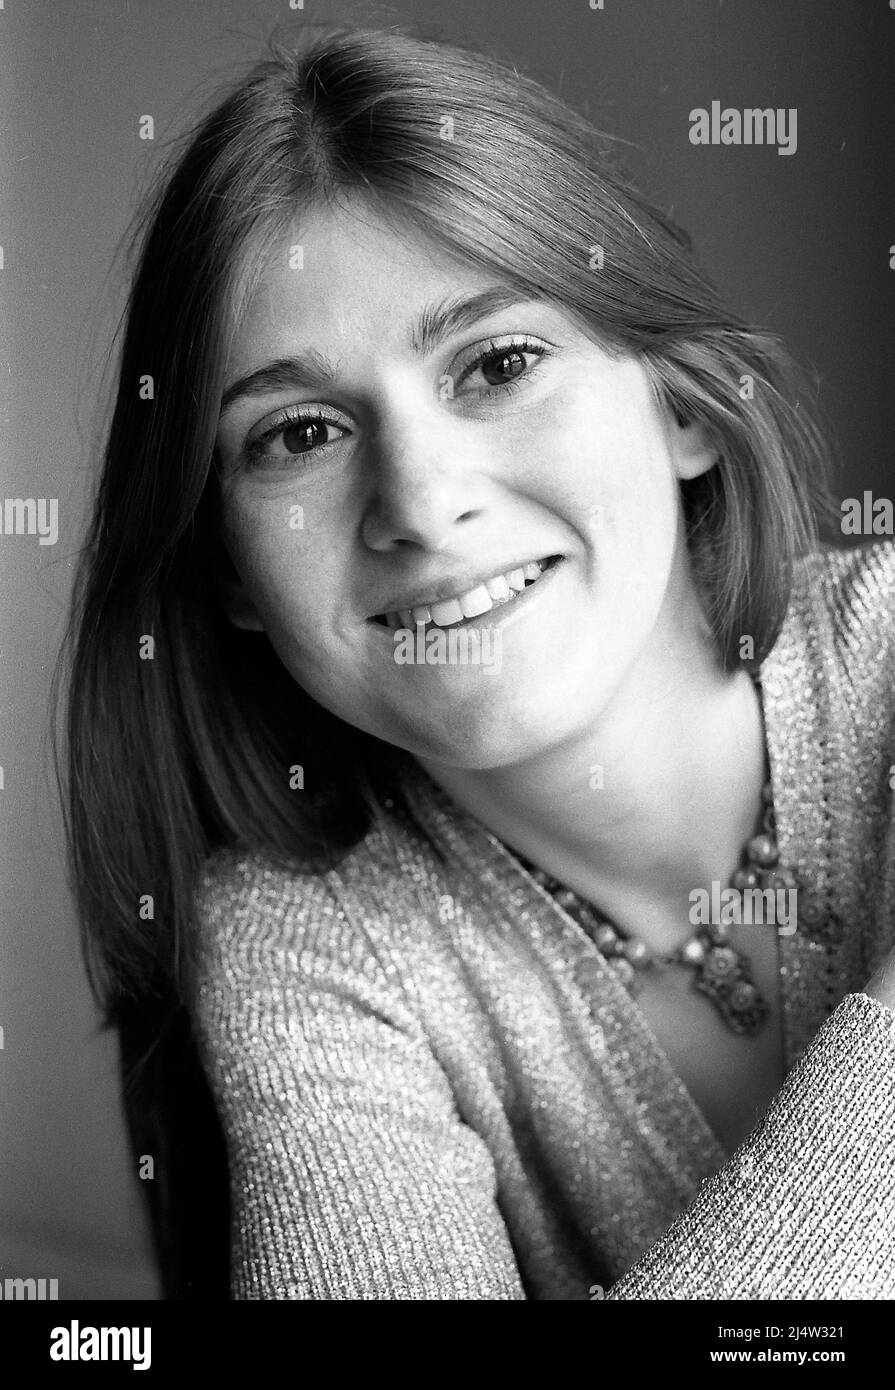 Schwarz-weißes, weiches Lichtporträt einer jungen Frau. Stockfoto